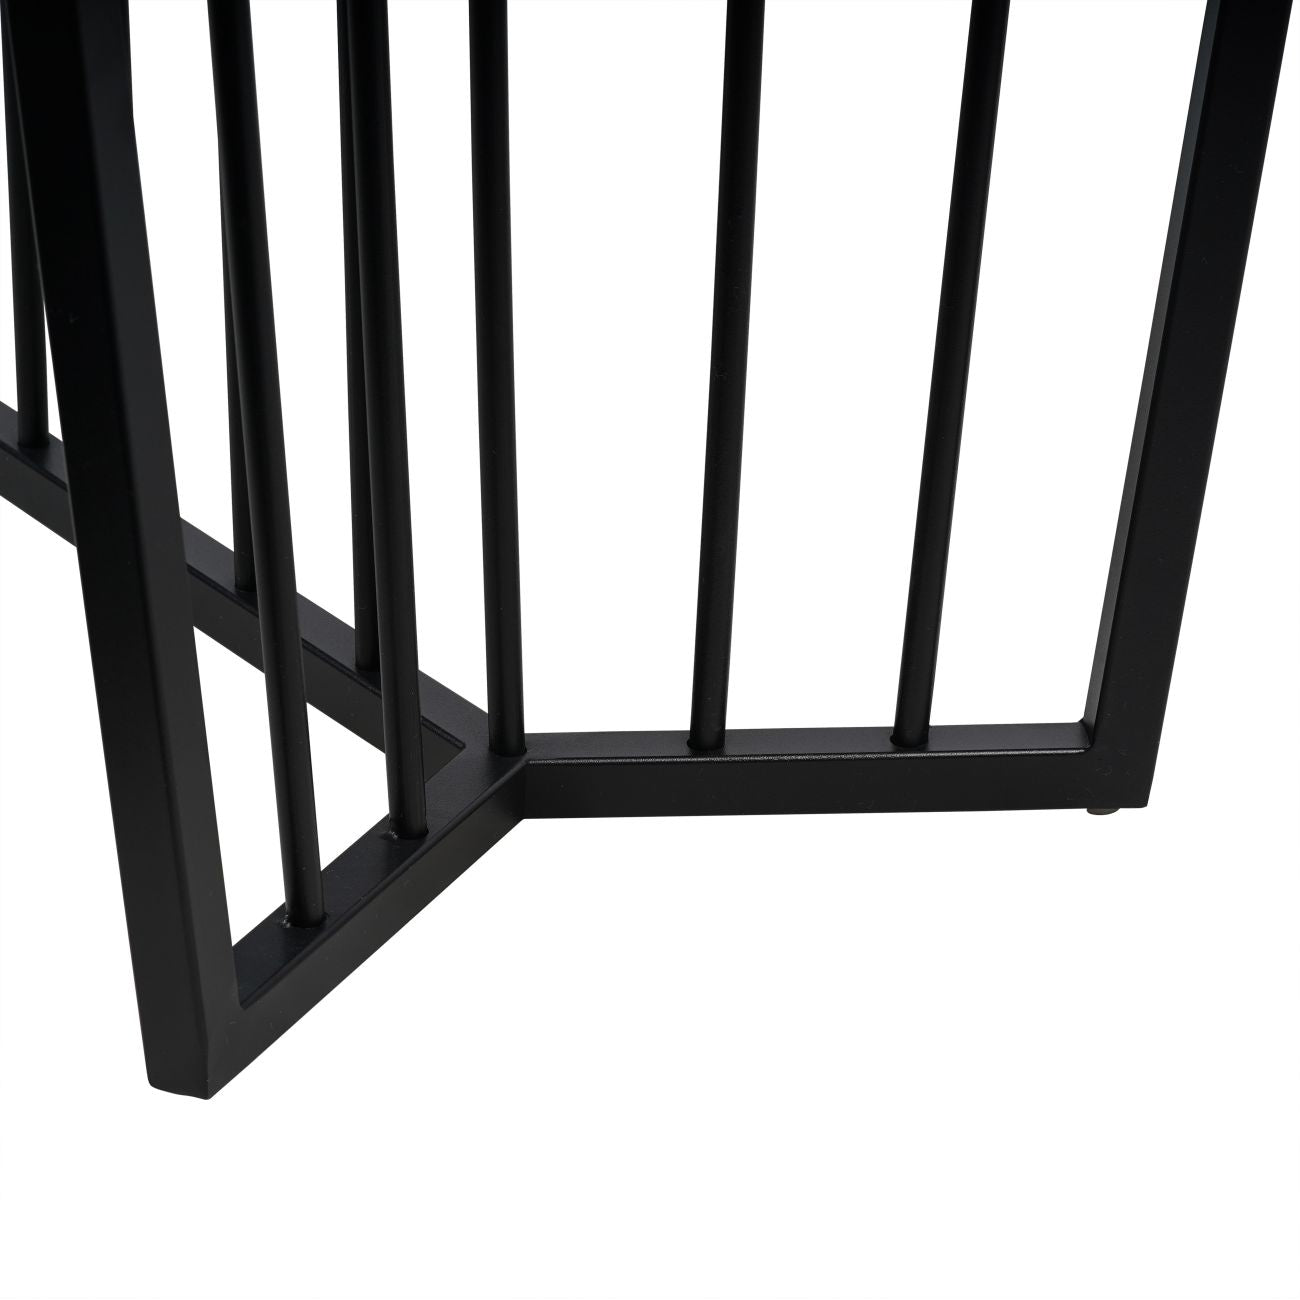 Table basse rectangulaire avec cadre noir et verre teinté Abington